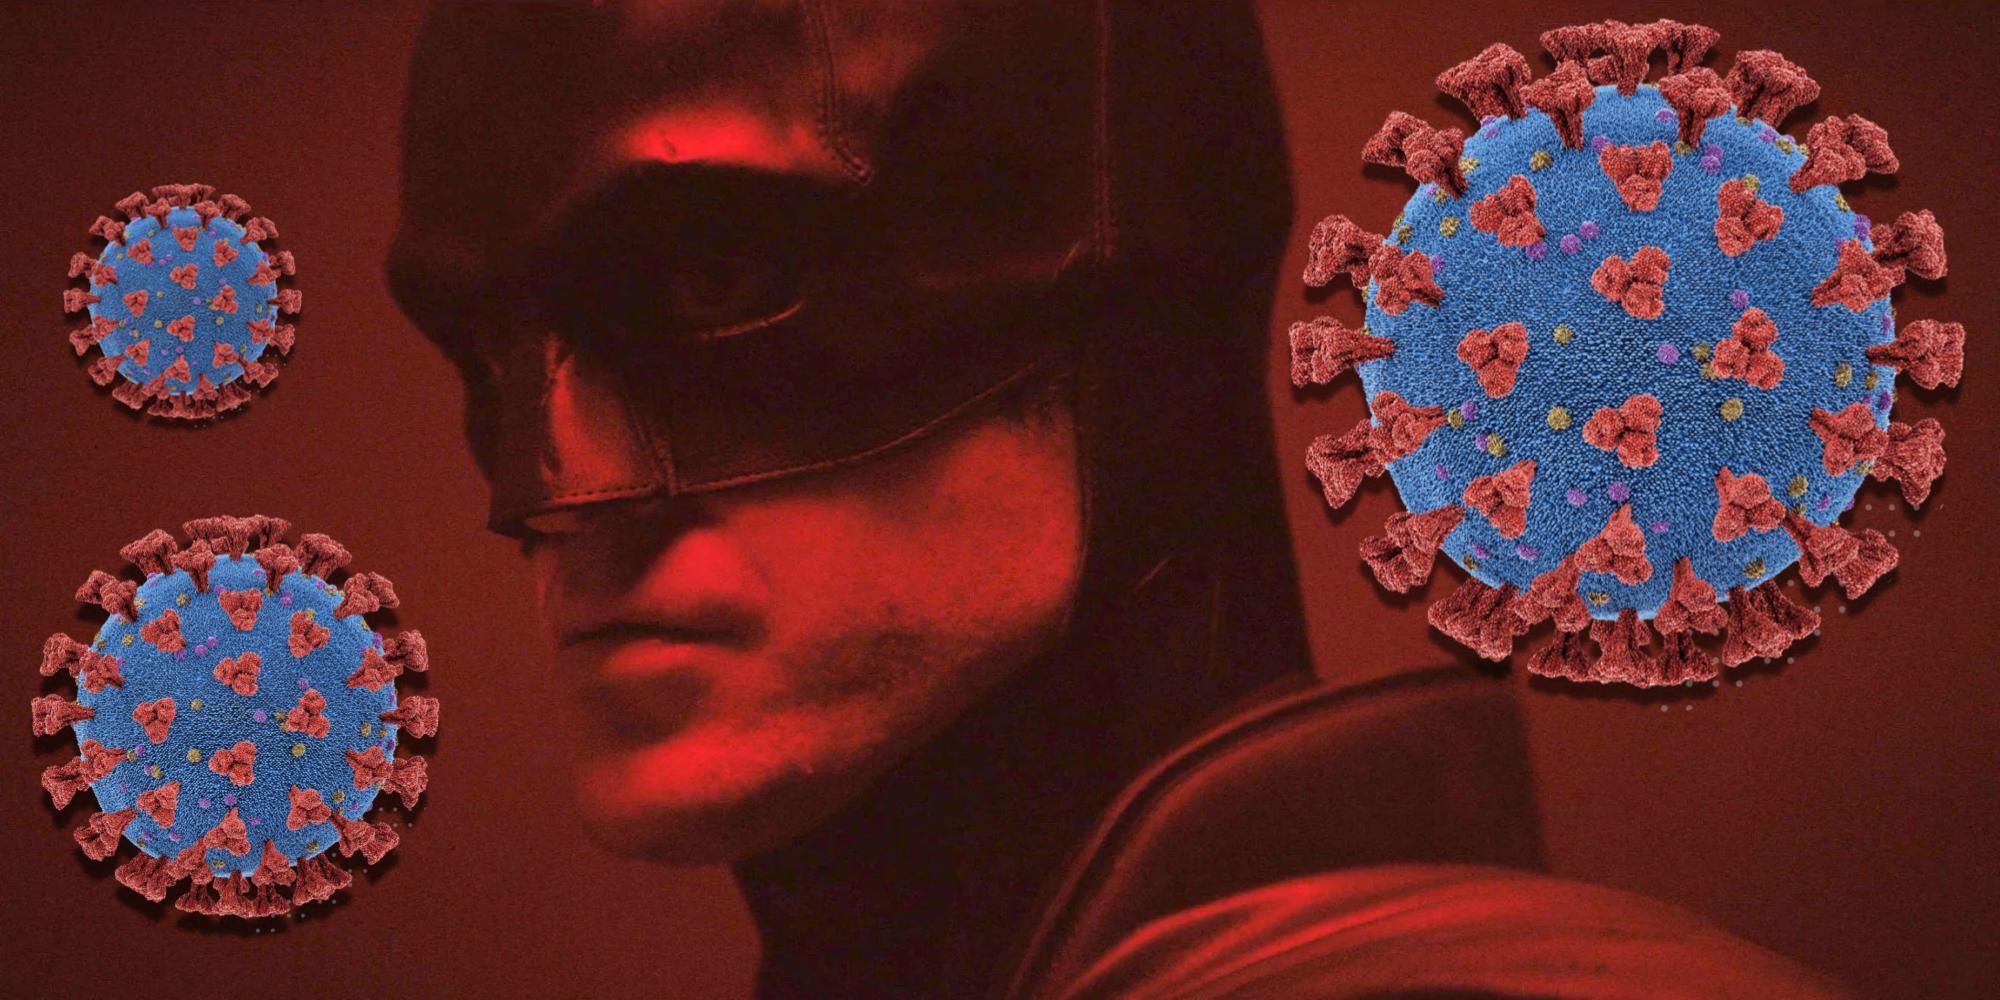 The Batman with coronavirus